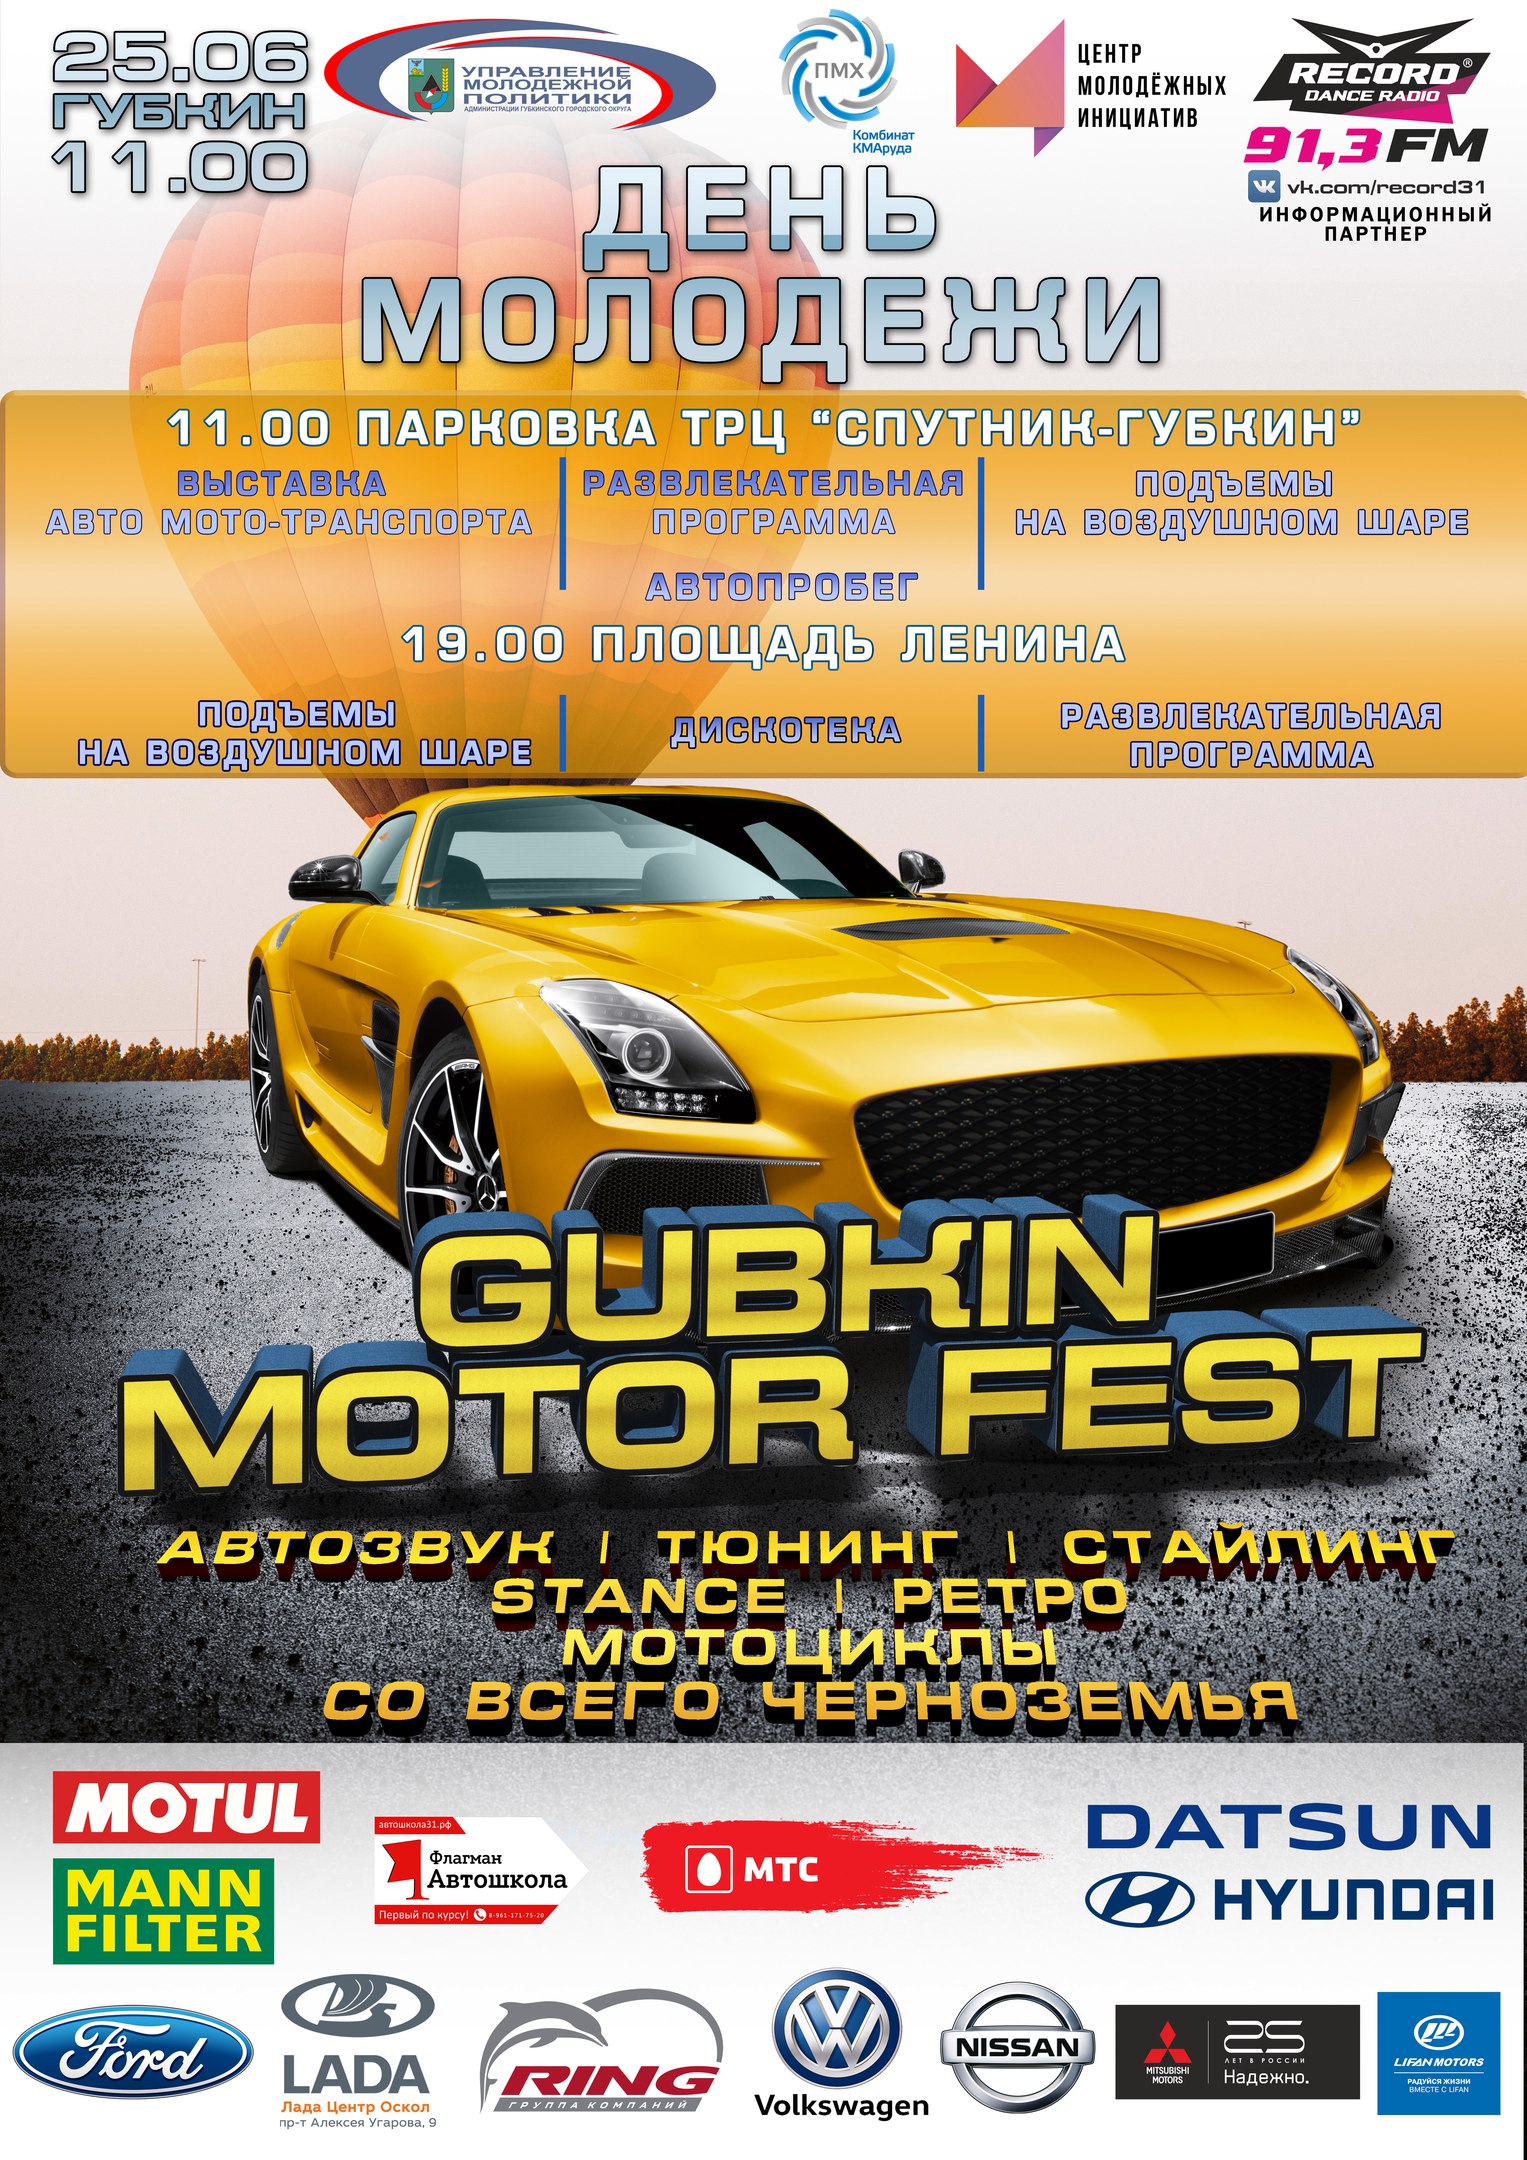 Gubkin Motor Fest